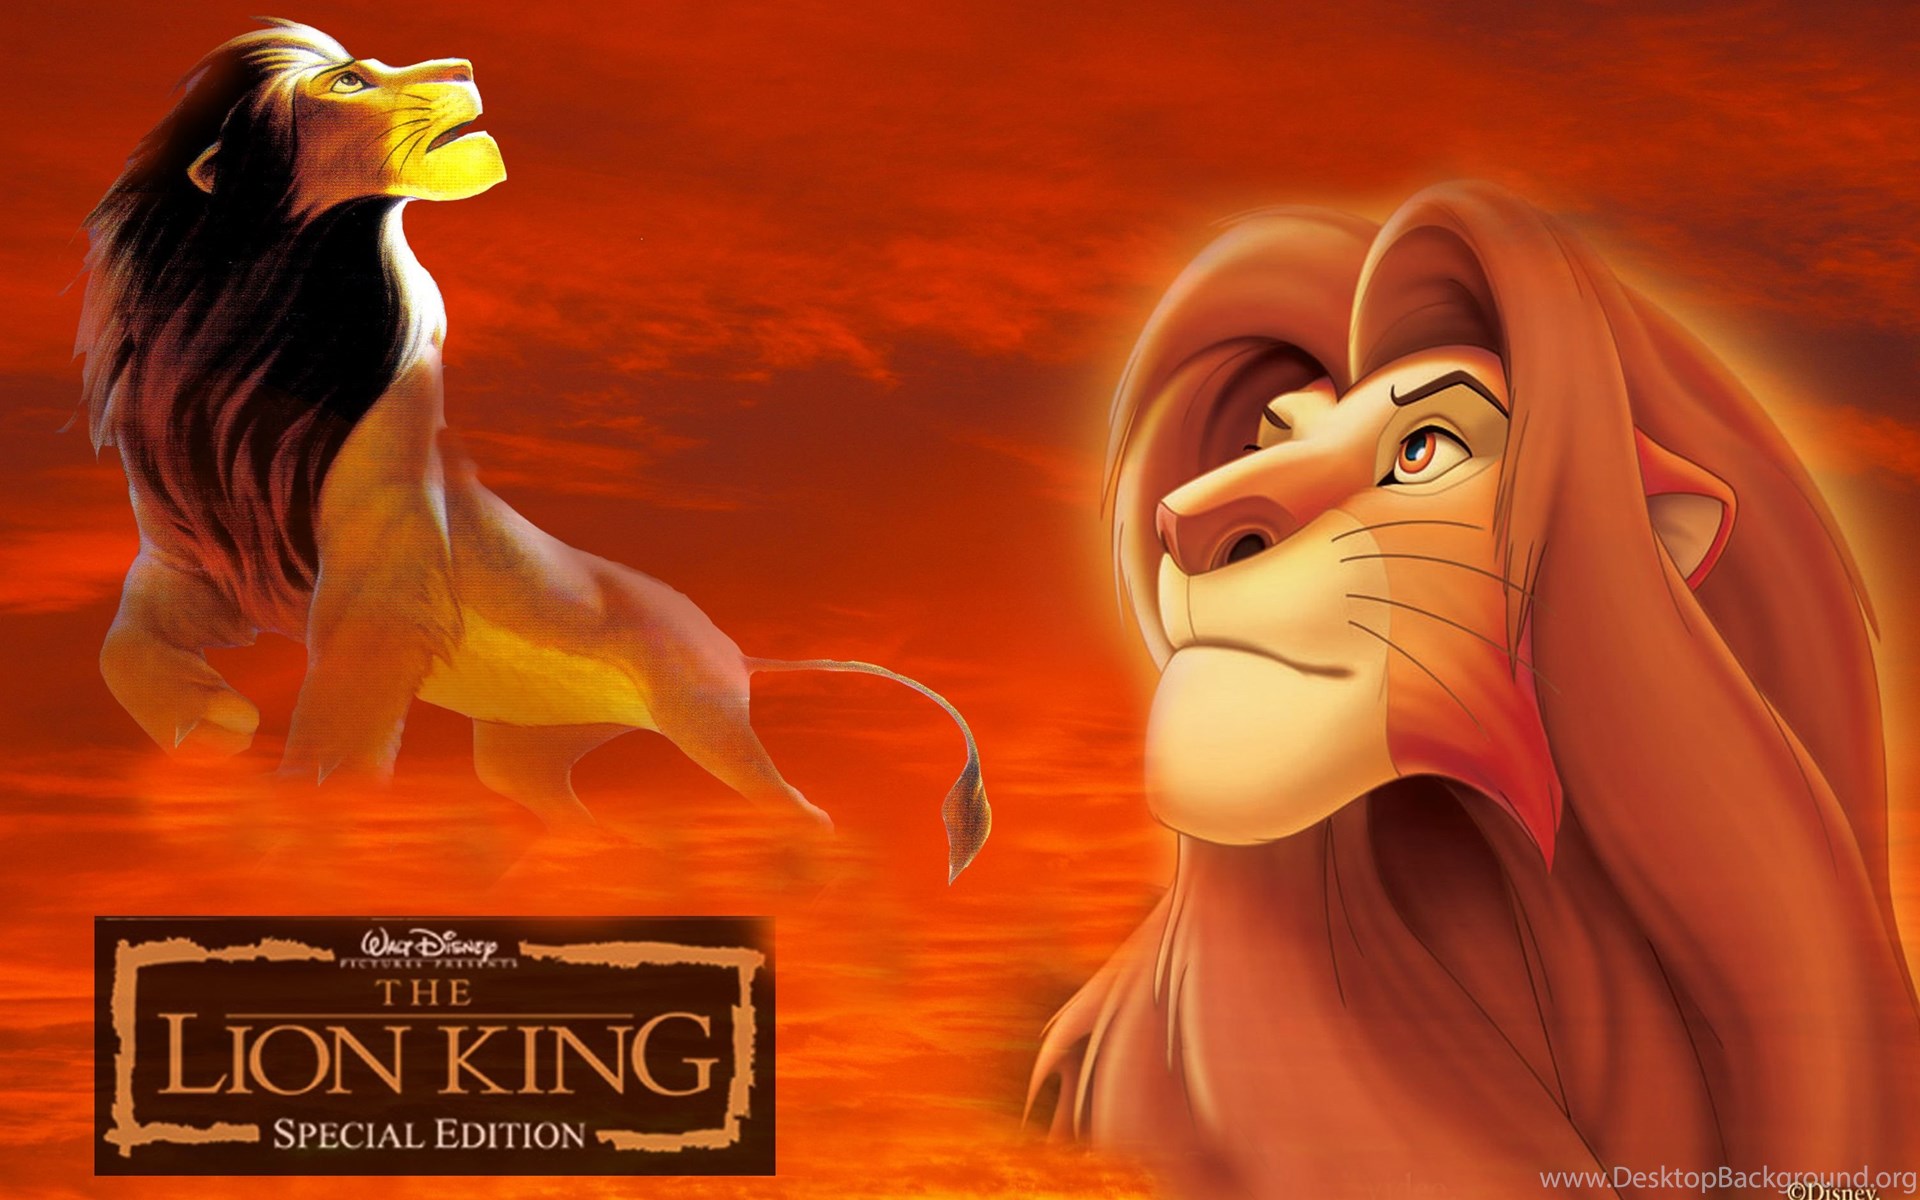 Download The Lion King Popular 1920x1200 Desktop Background. 